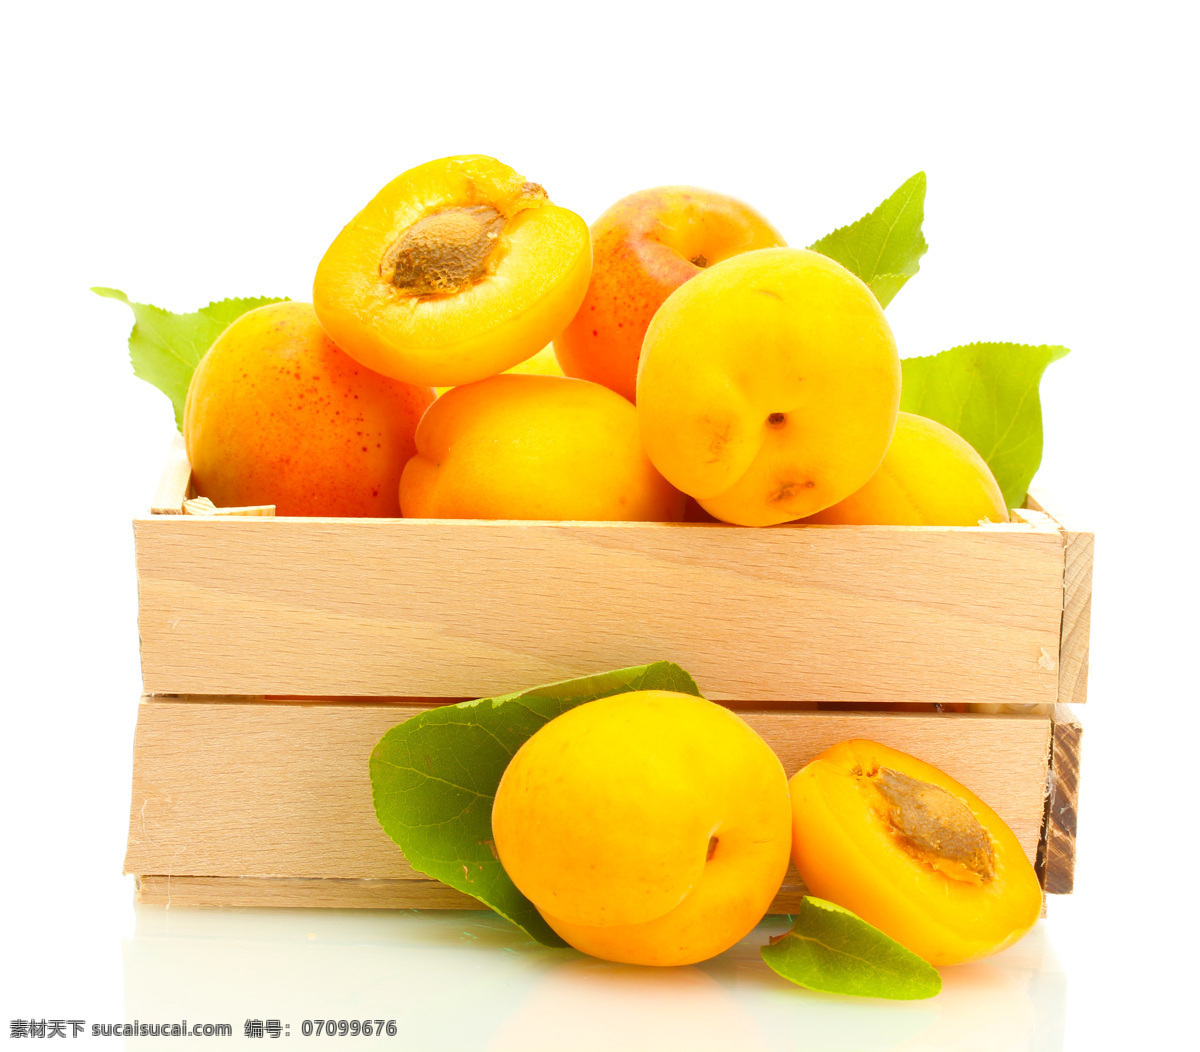 黄杏 果 黄杏果 水果 杏堆 瓜果蔬菜集锦 生物世界 蔬菜图片 餐饮美食